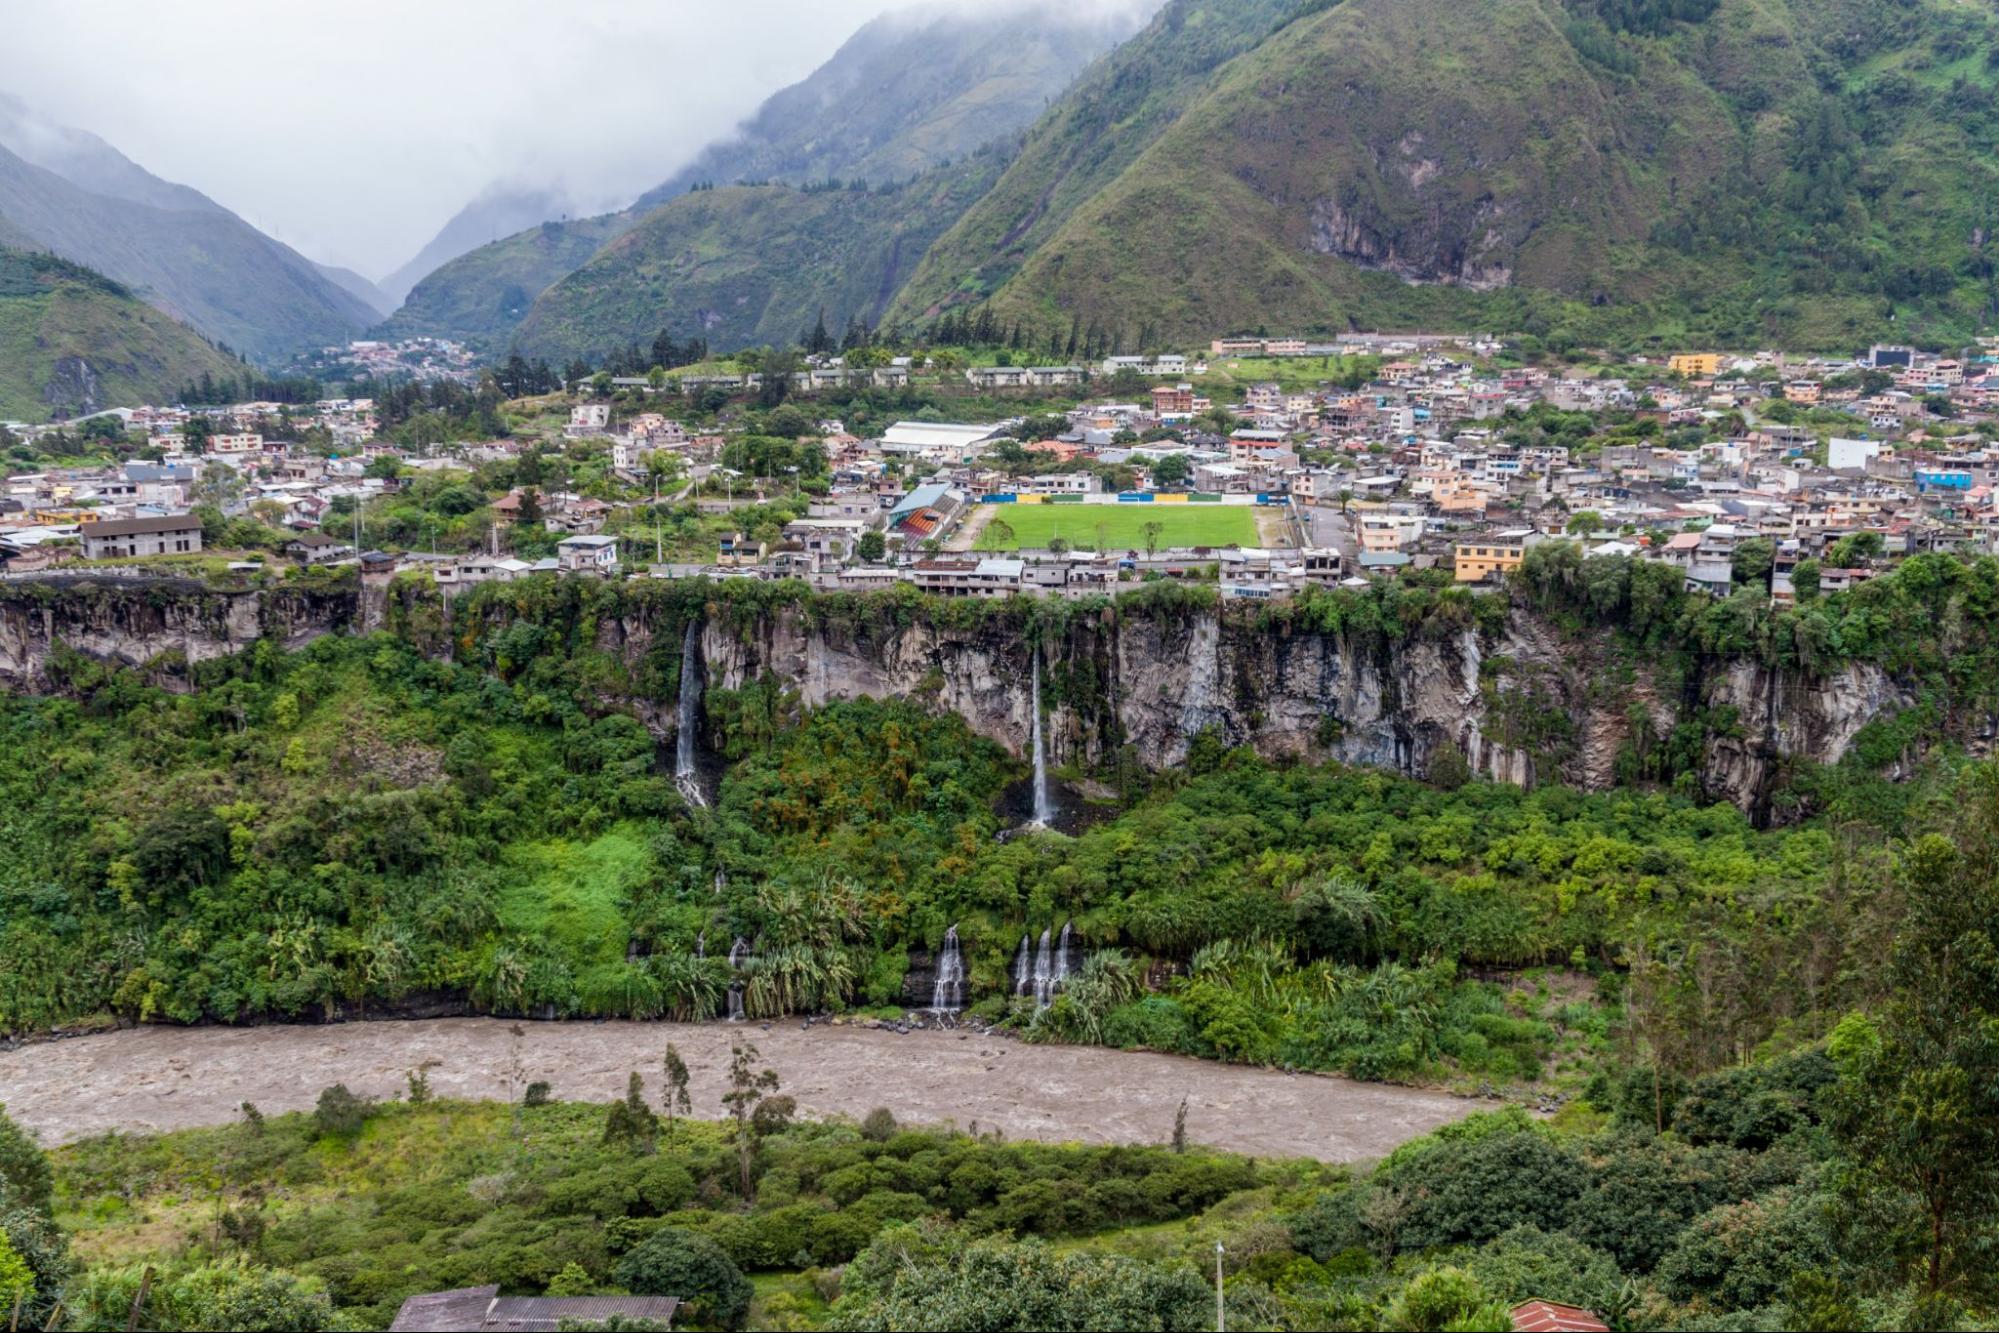 Banos de Agua Santa, popular tourist destination in Ecuador